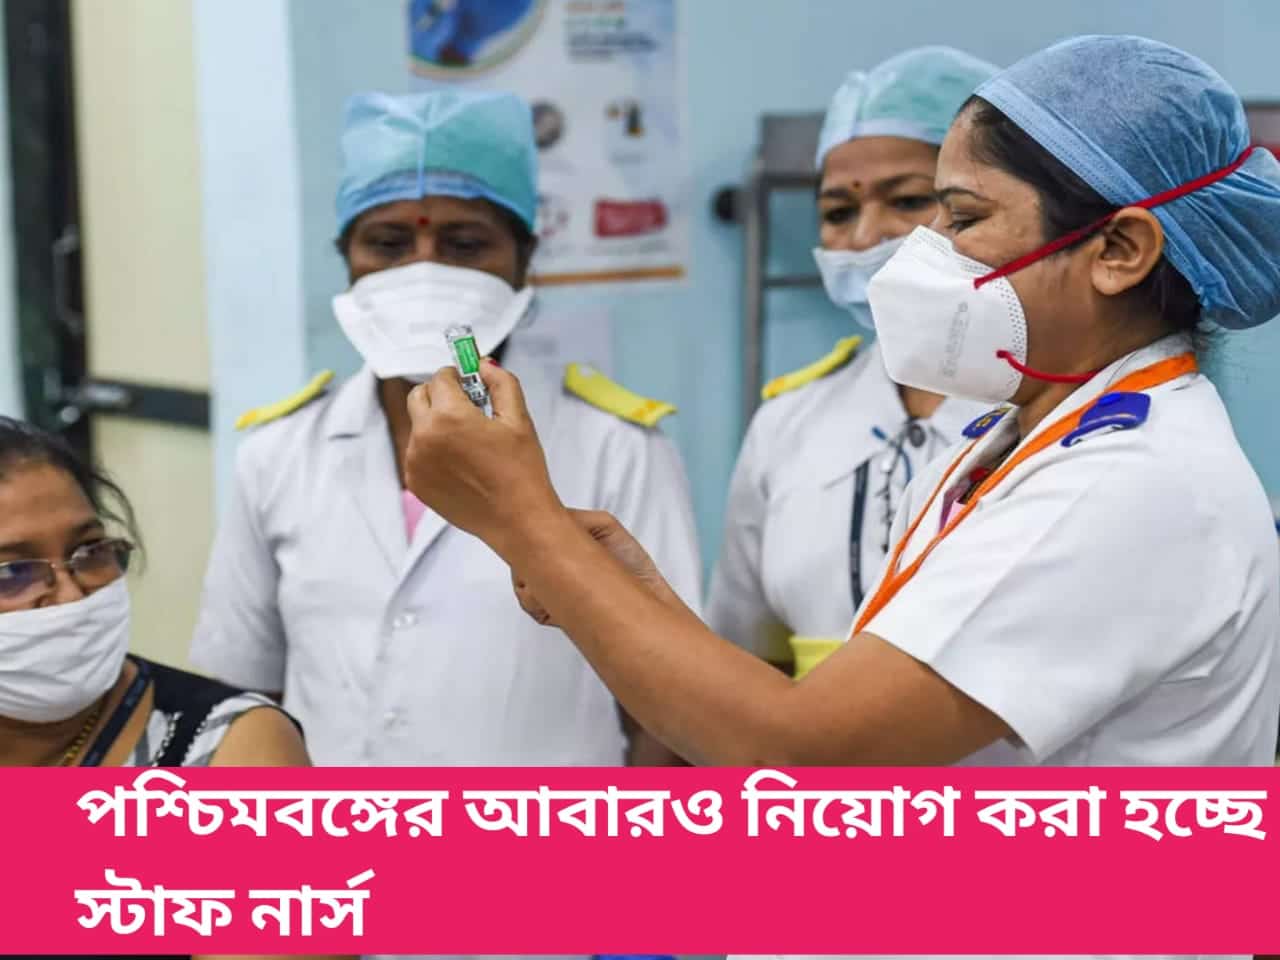 পশ্চিমবঙ্গে আবারো স্টাফ নার্স পদে নিয়োগ বিজ্ঞপ্তি প্রকাশিত হল | West Bengal Power Development Corporation (WBPDCL) Staff Nurse Recruitment-thumnail